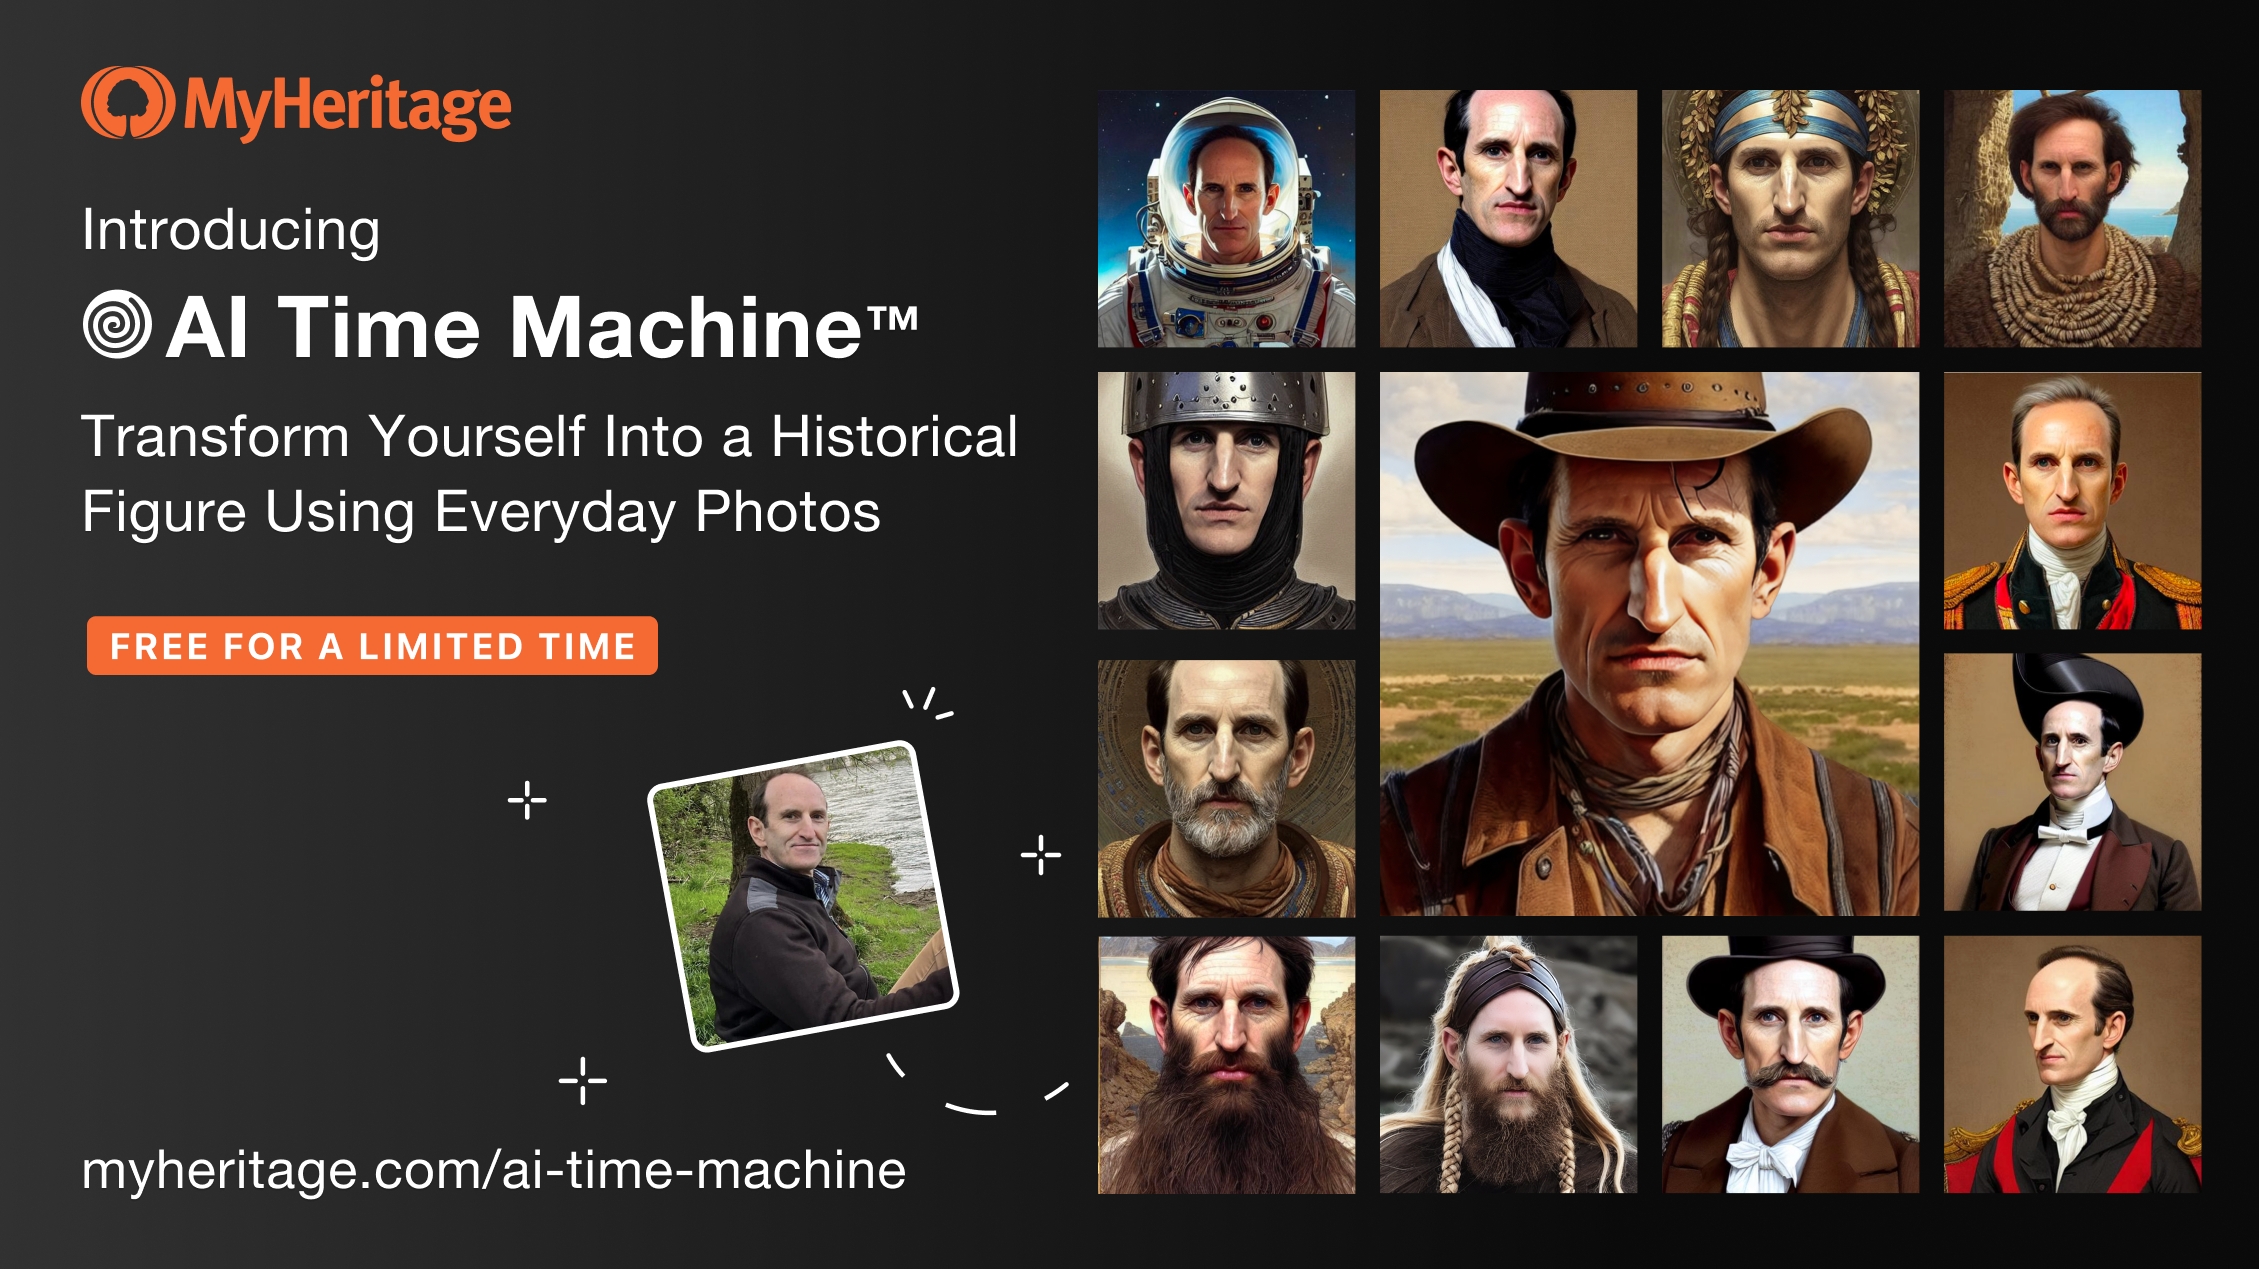 AI Time Machine — программа, которая превратит вас в историческую личность из любой эпохи - фото №1